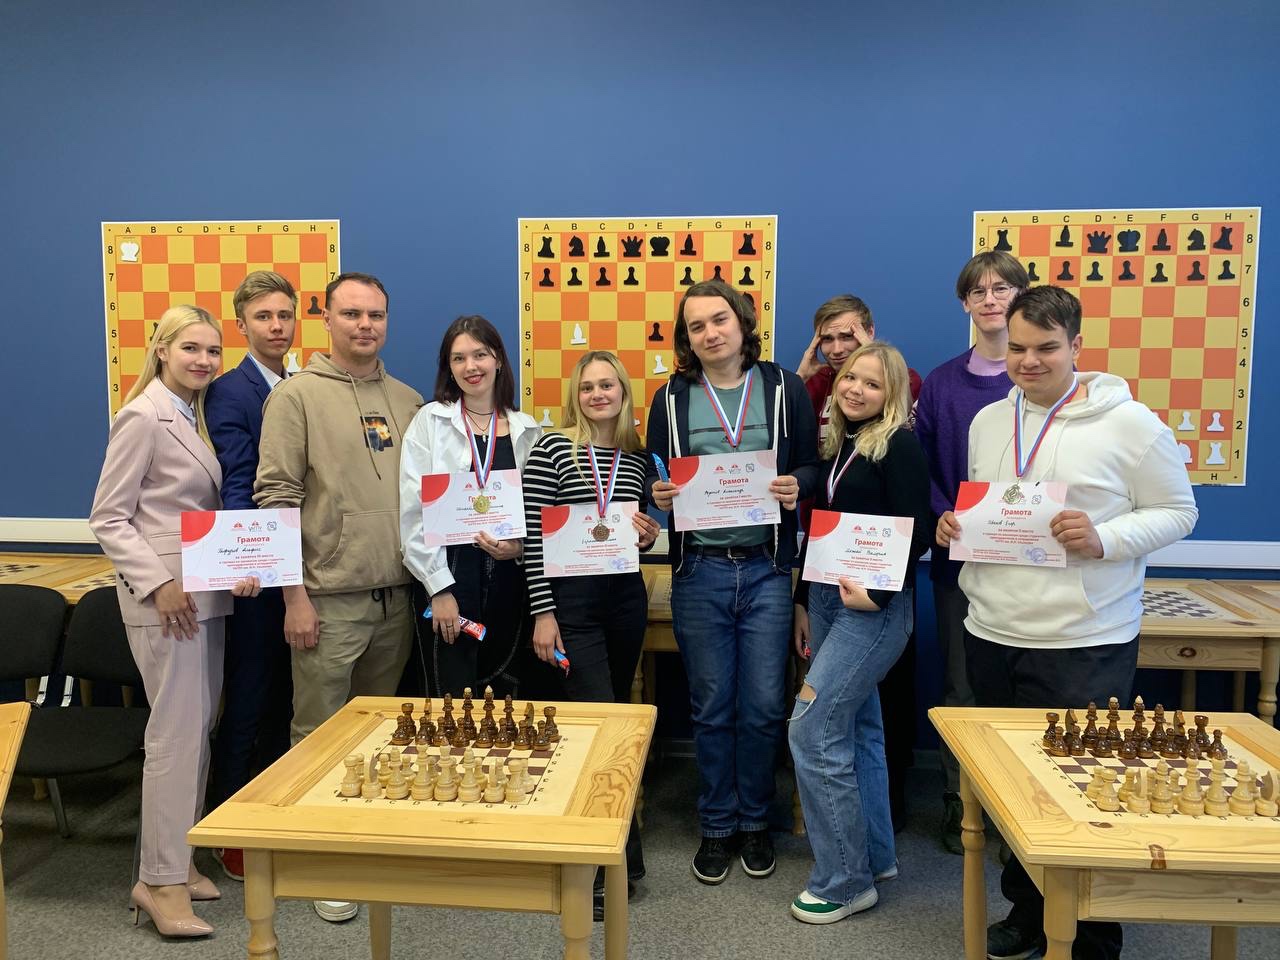 На базе педагогического технопарка «Кванториум» УлГПУ состоялся турнир по шахматам среди студентов и преподавателей университета.